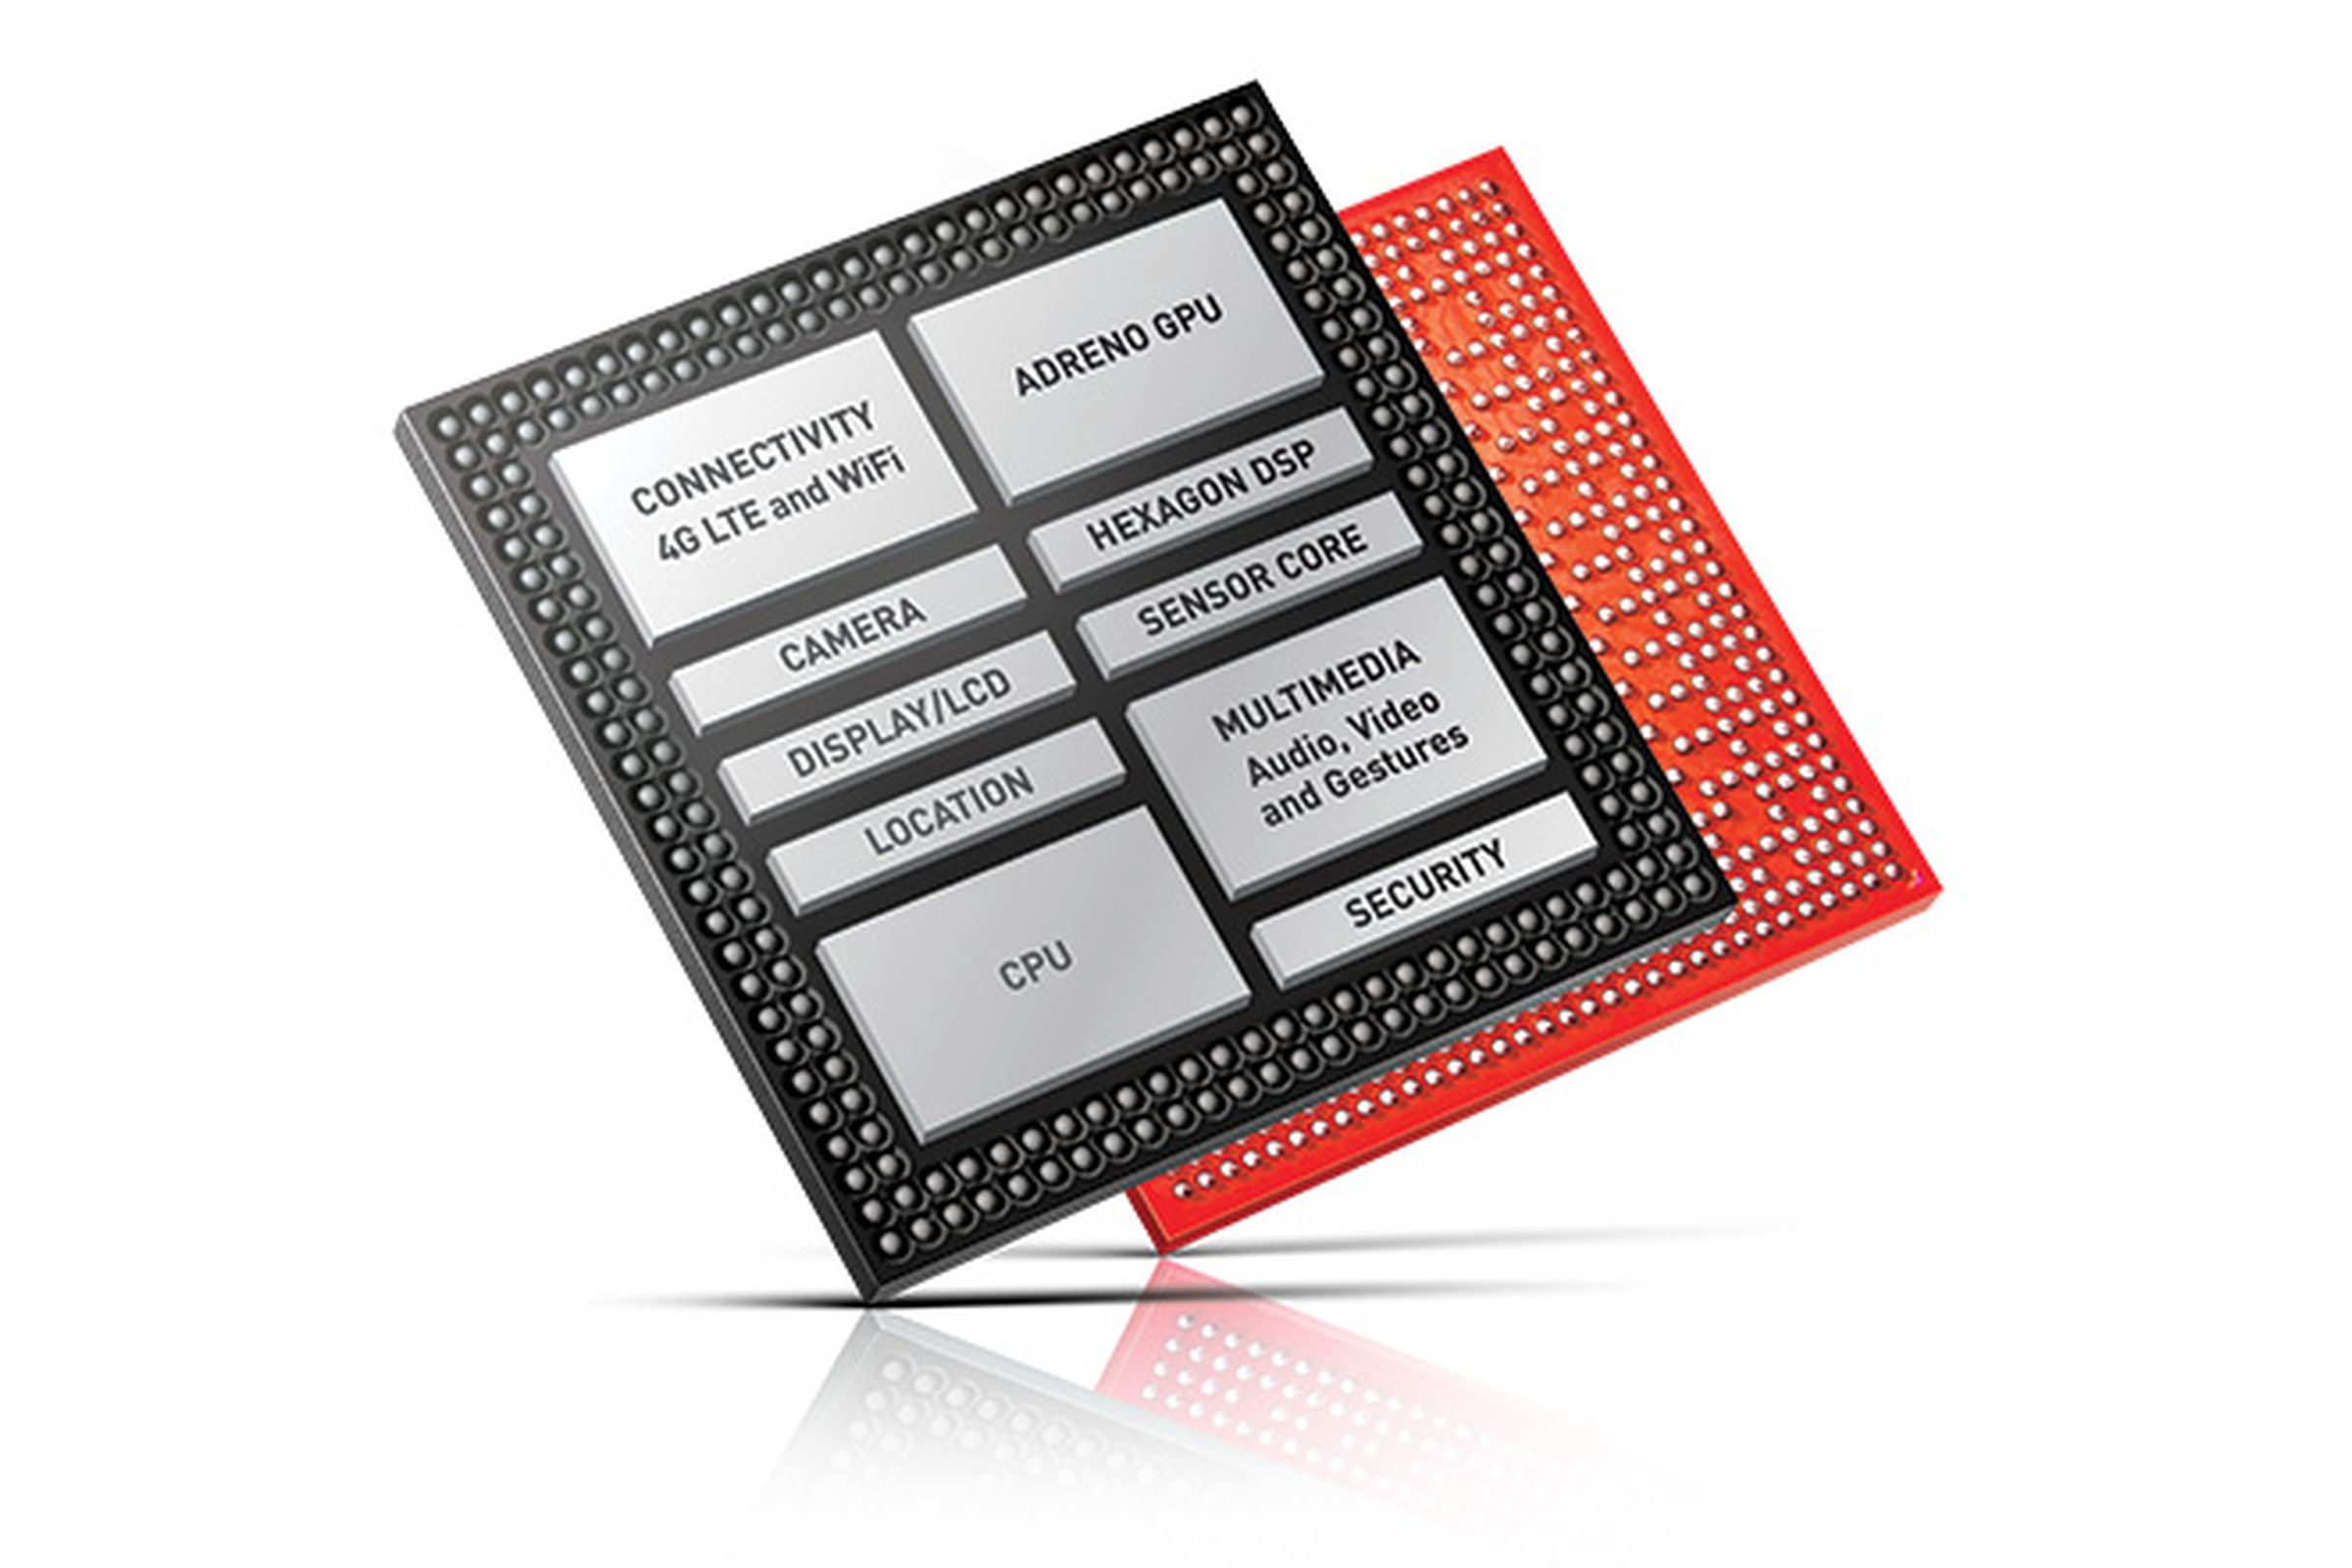 Snapdragon chip integration